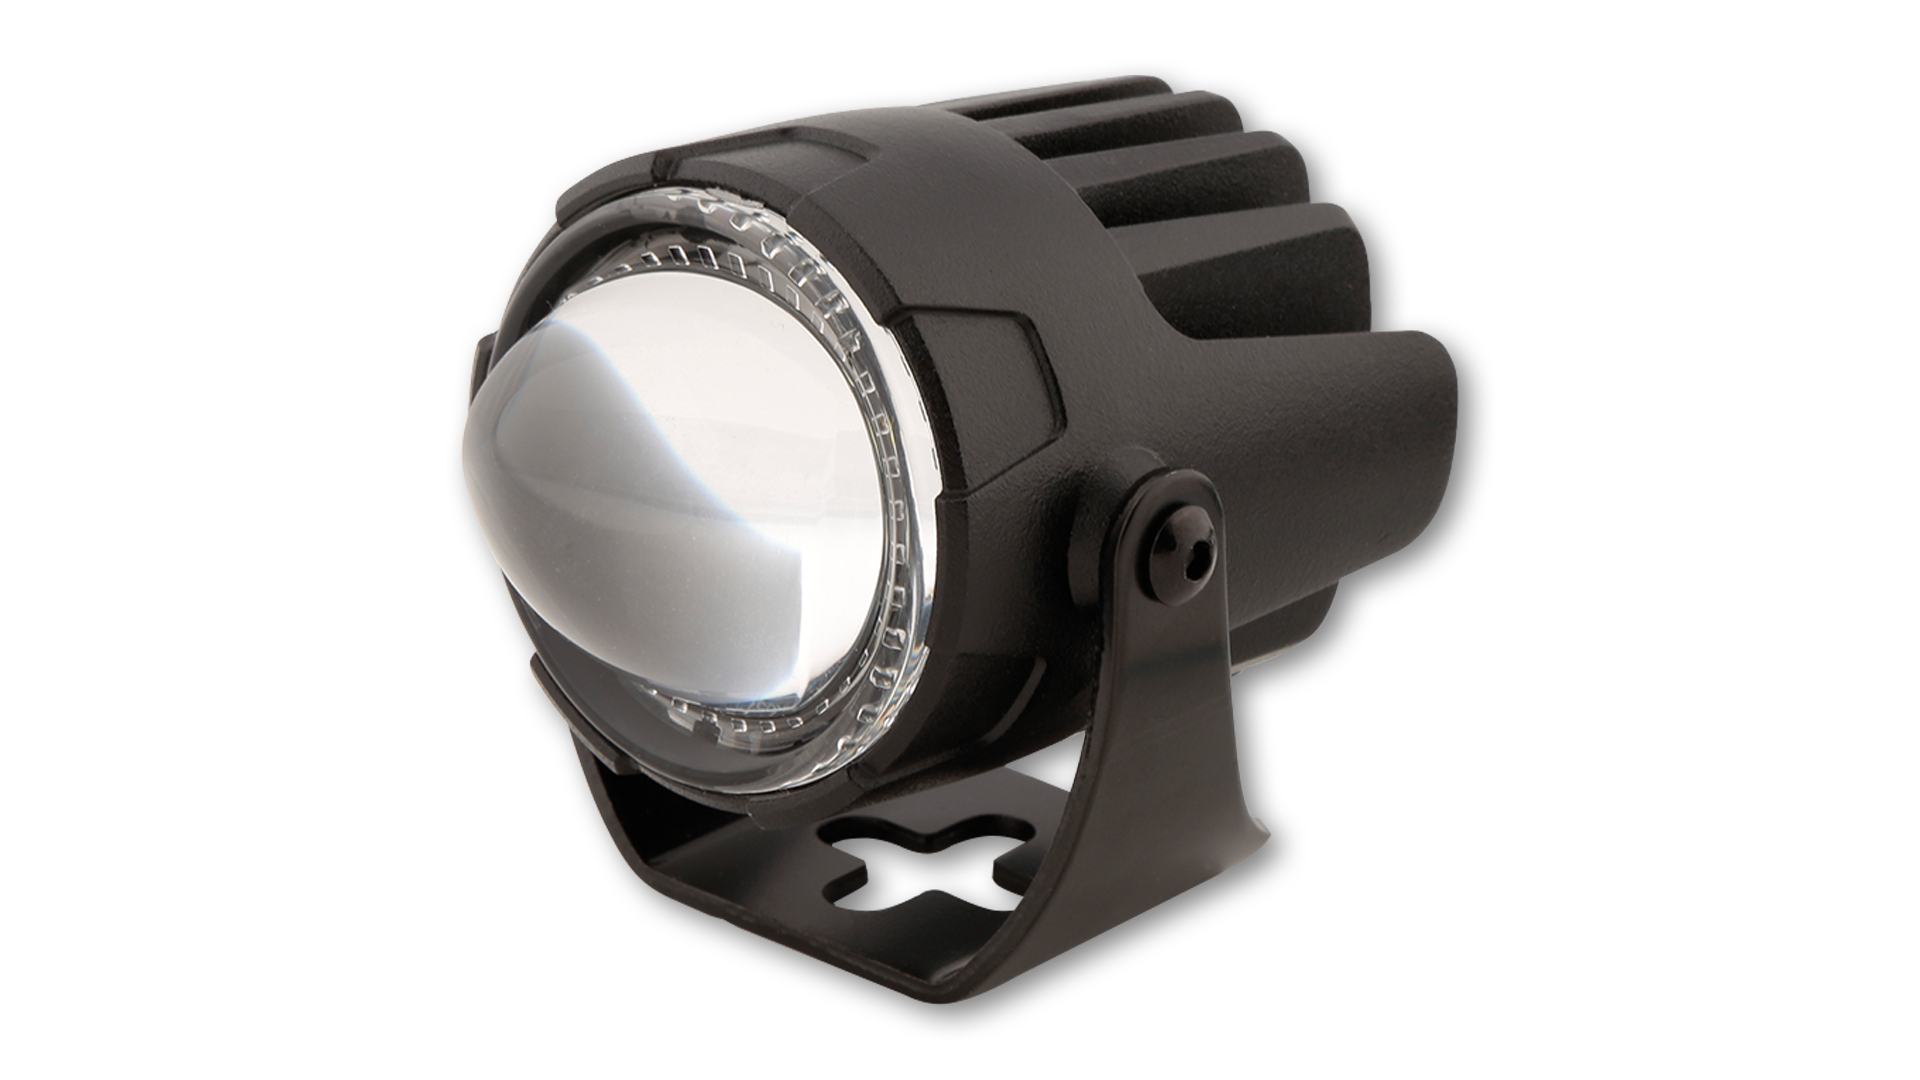 LED Abblendscheinwerfer FT13- LOW, schwarz, E-geprüft, Stück.